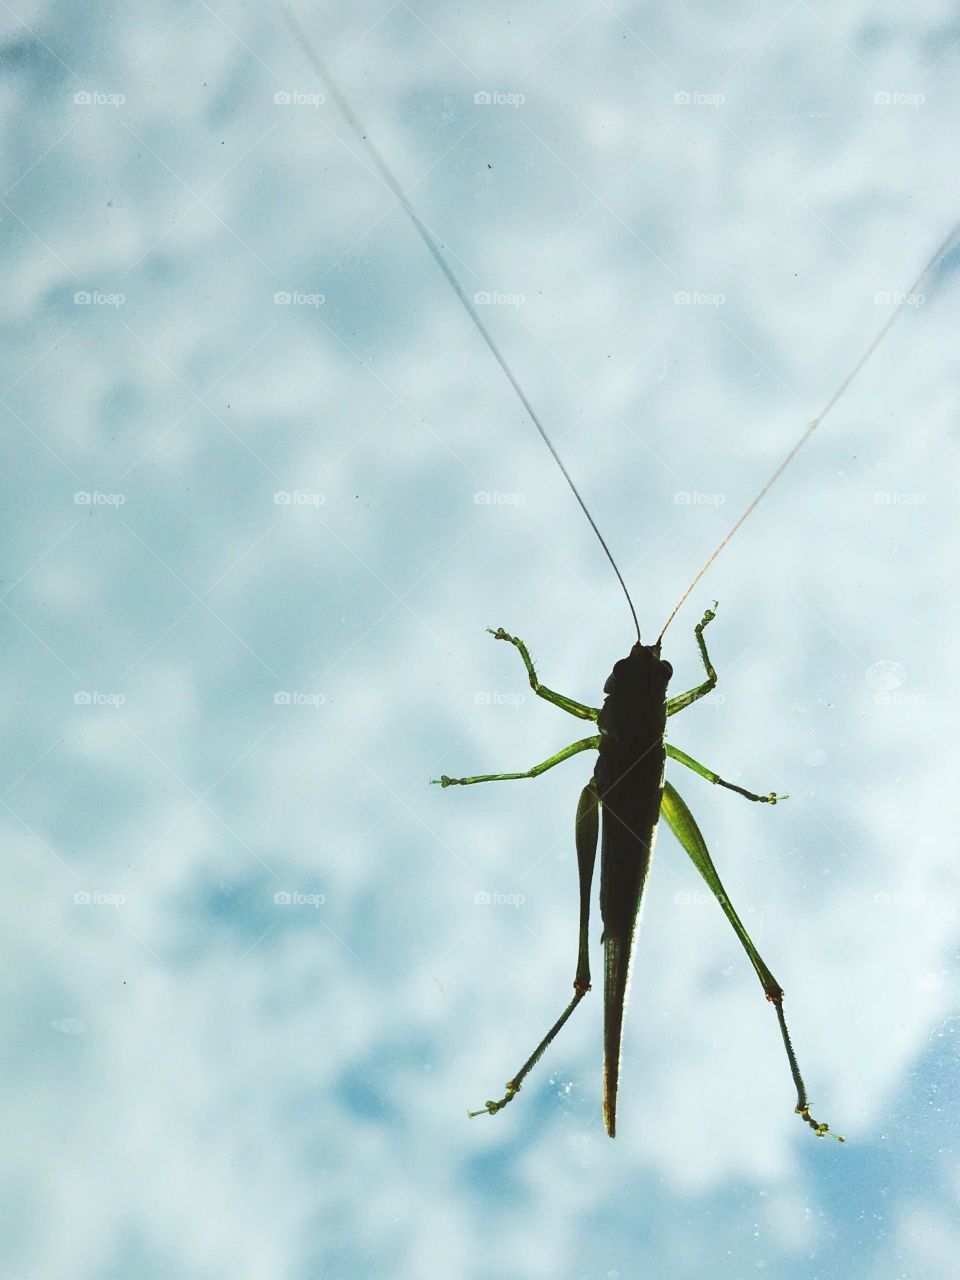 Grasshopper
